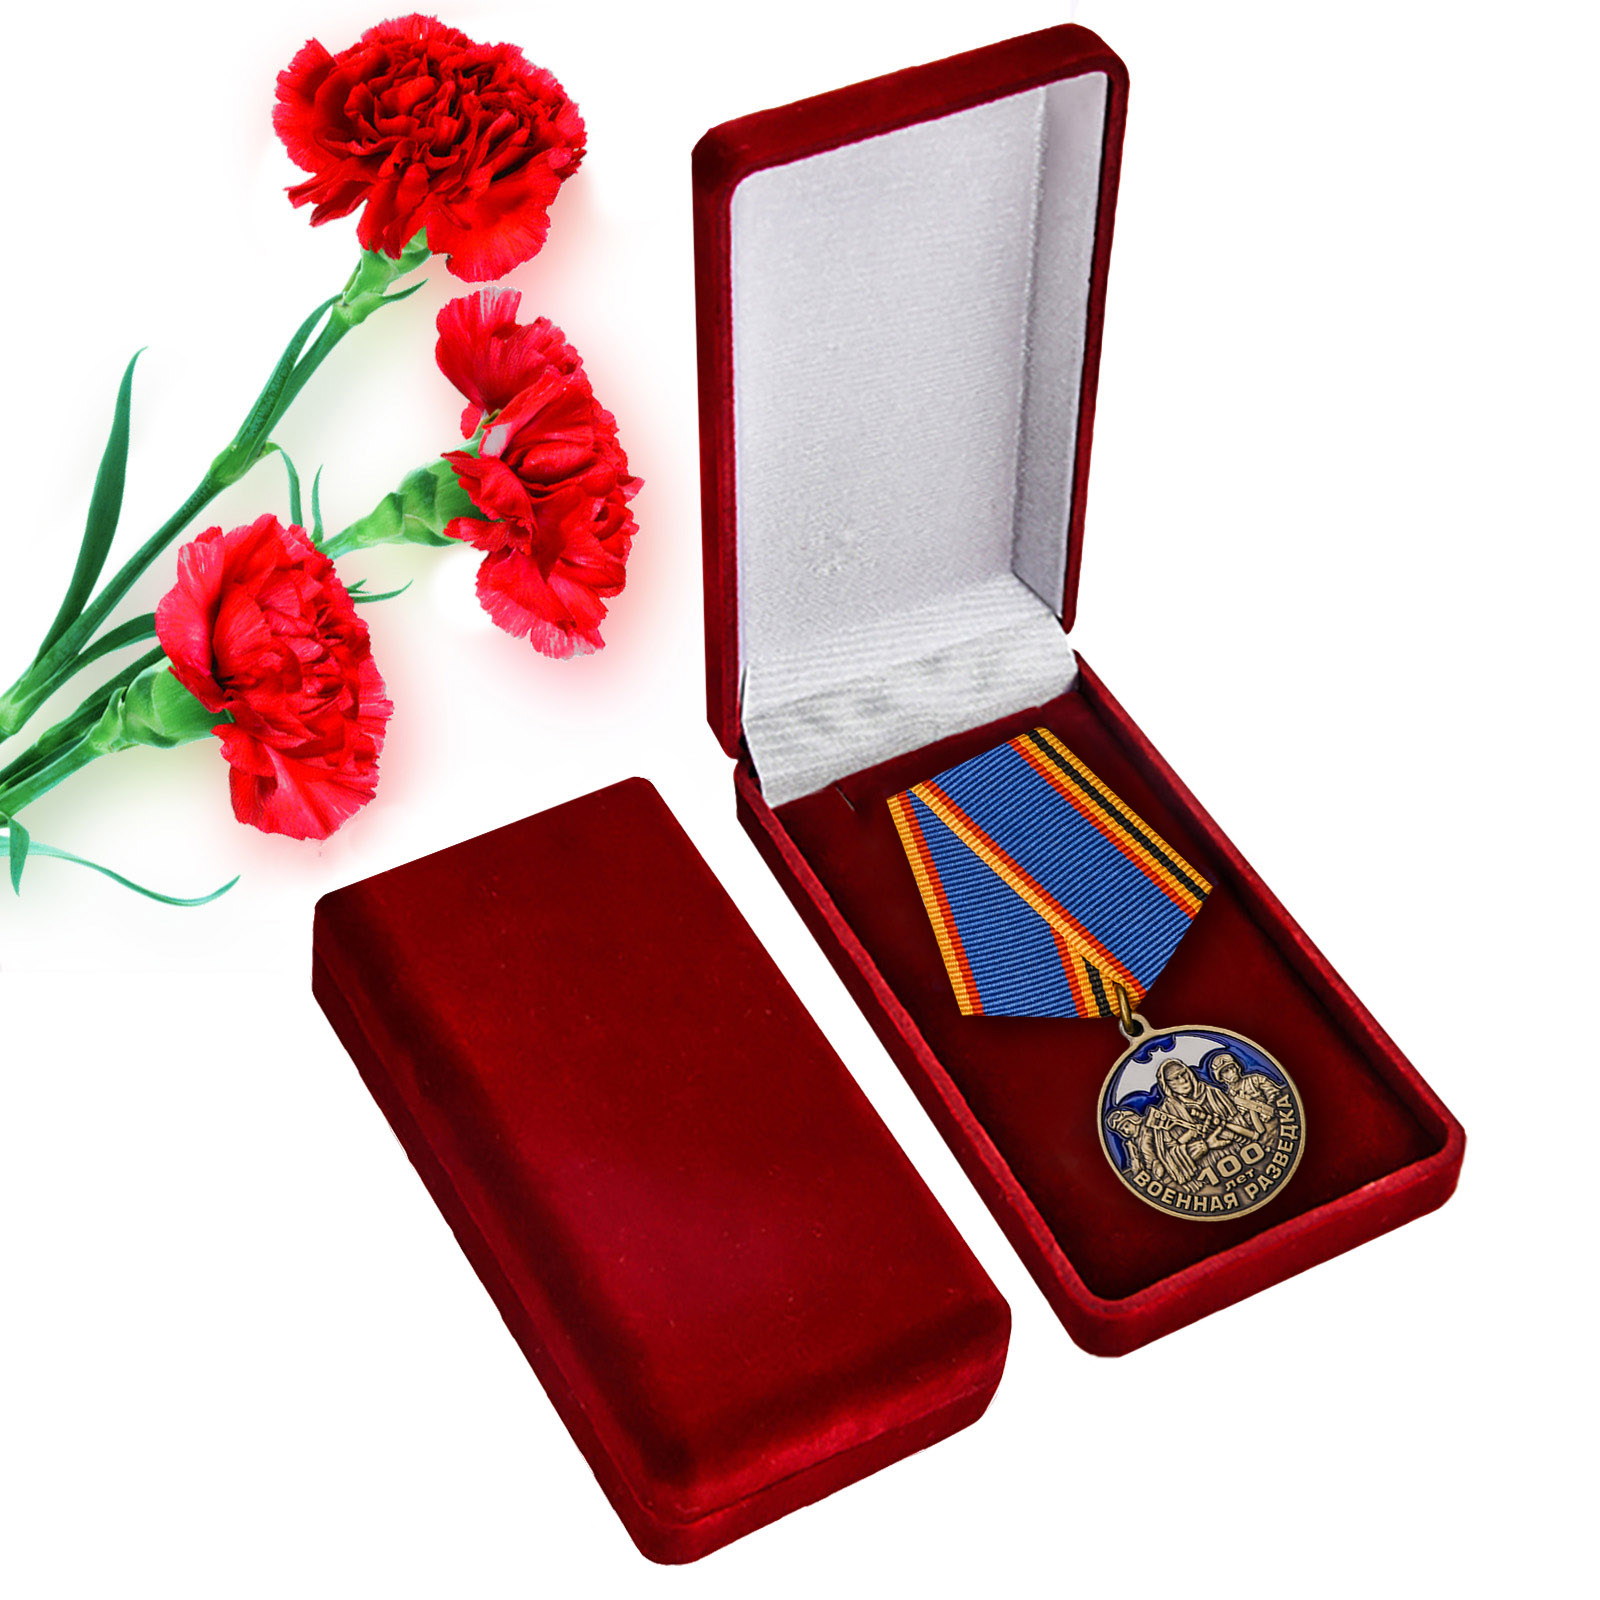 Медаль "Военной разведке - 100 лет"